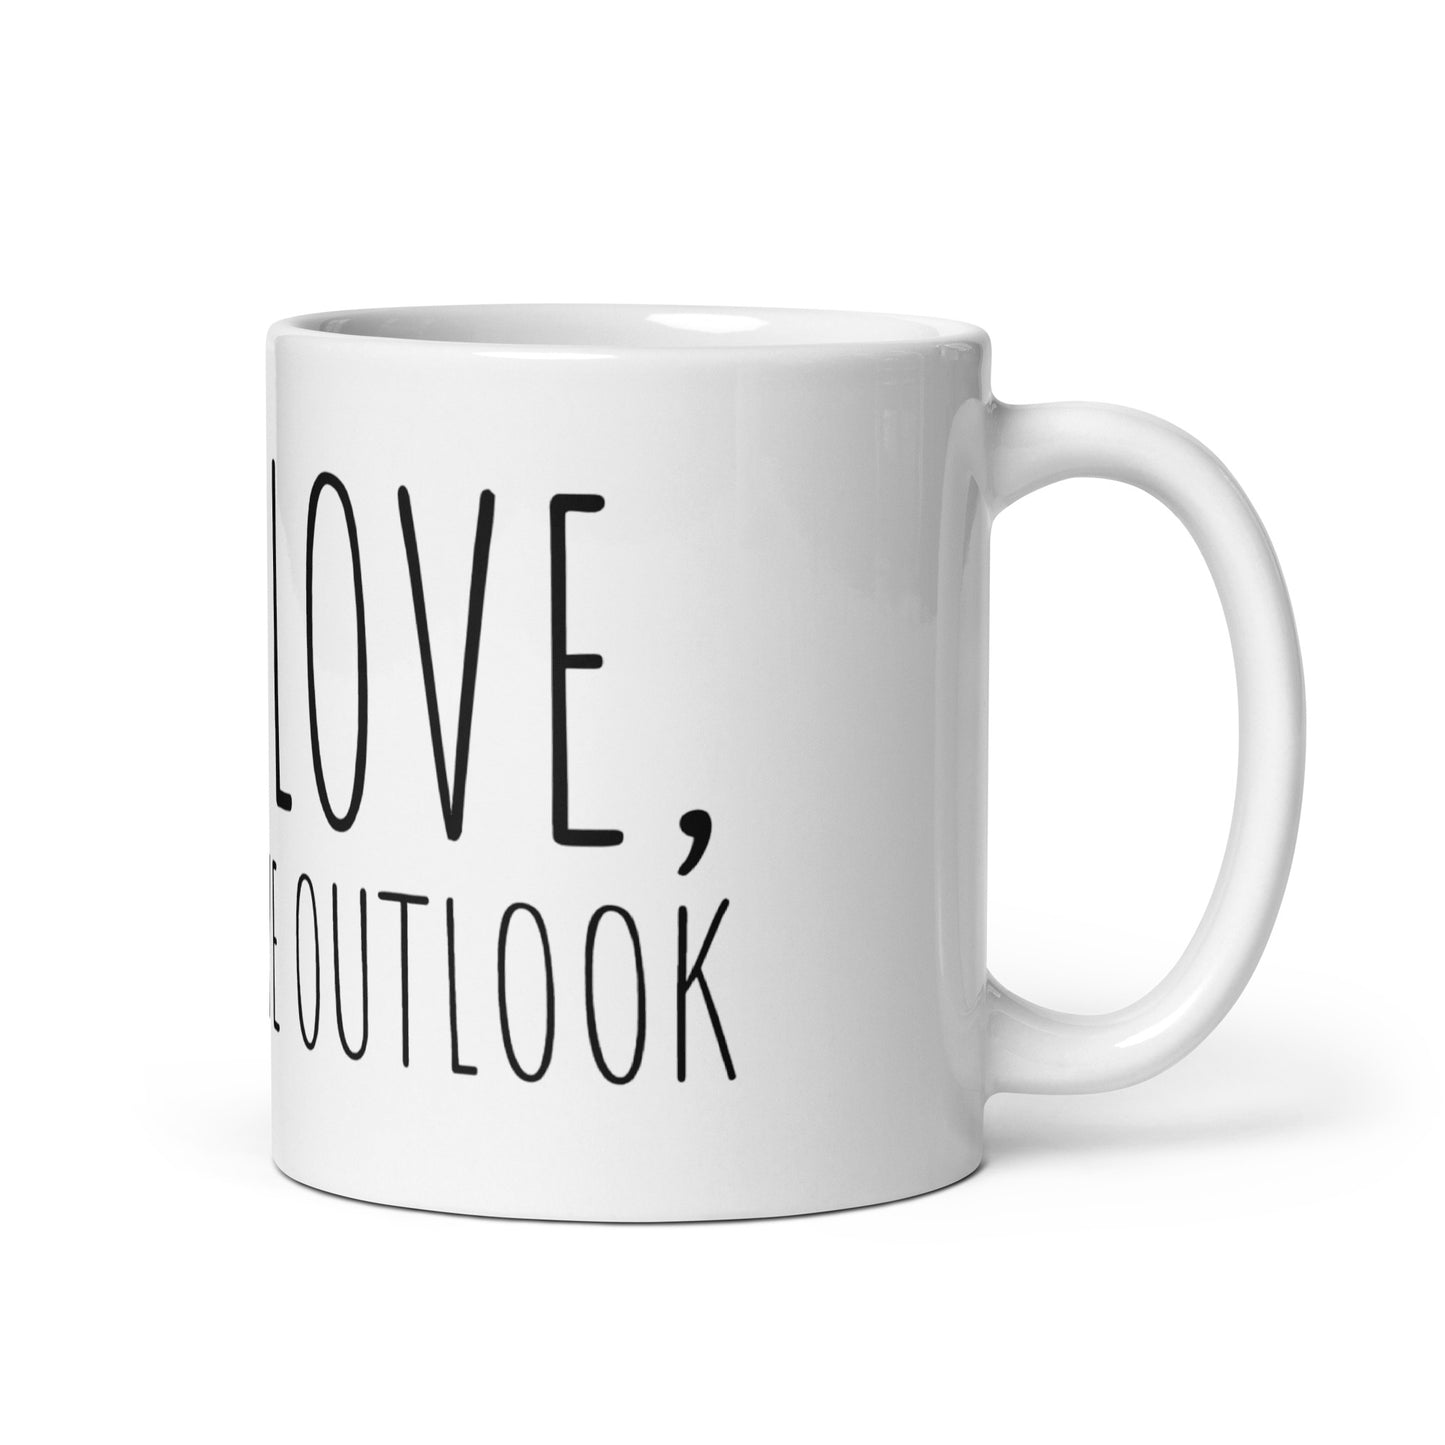 Live, Love, Convective Outlook Mug